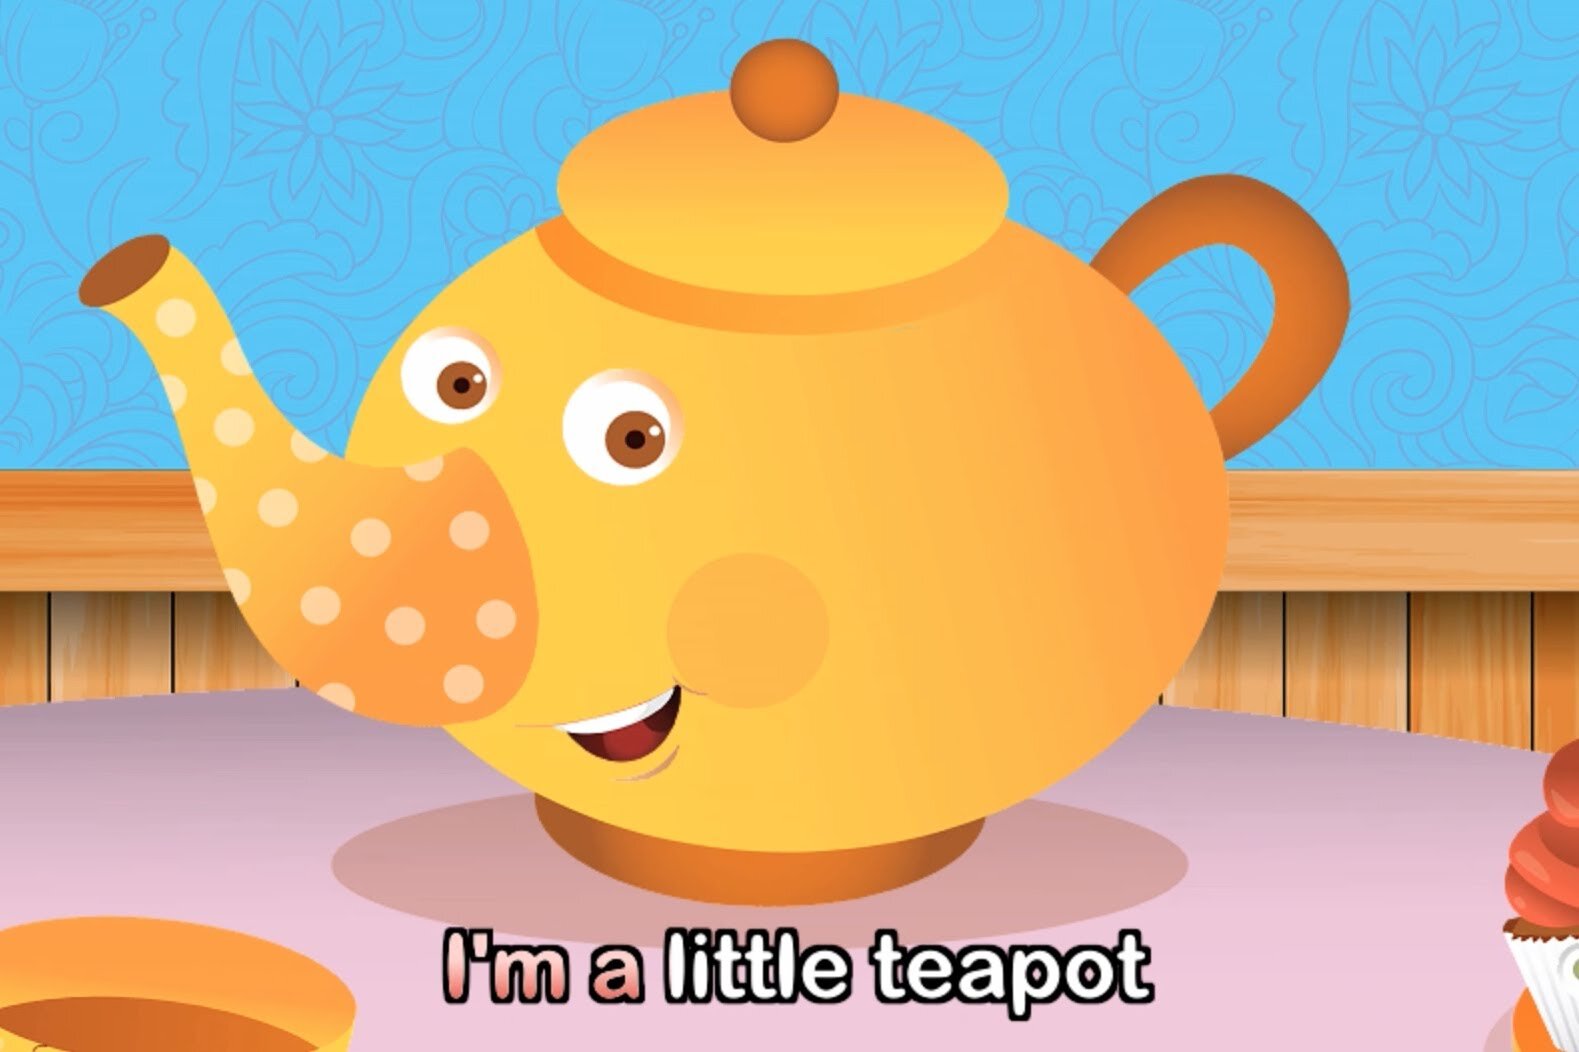 L am little. Little Teapot. I'M A little Teapot. Я маленький чайник. I am a little Teapot текст.